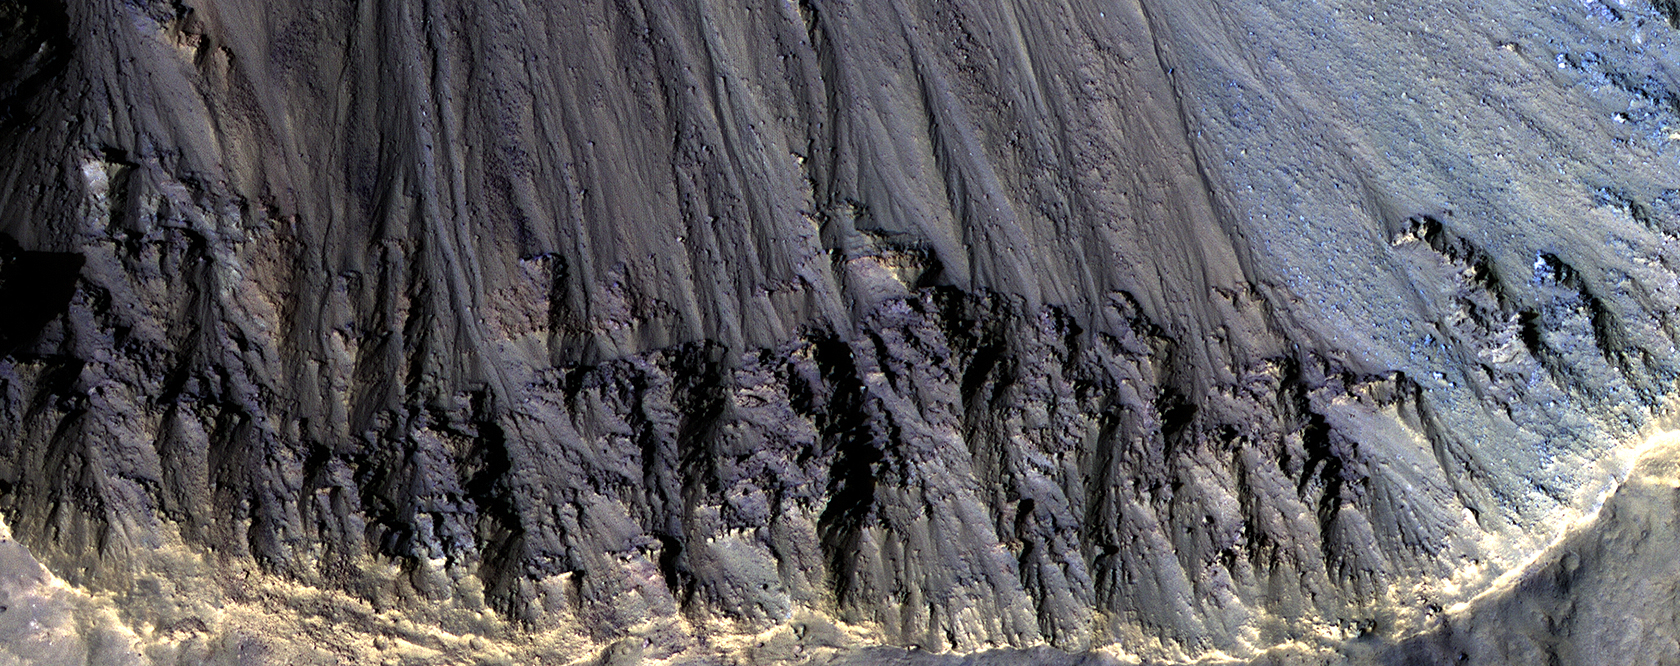 Rocas coloridas aflorando en un cráter de impacto reciente